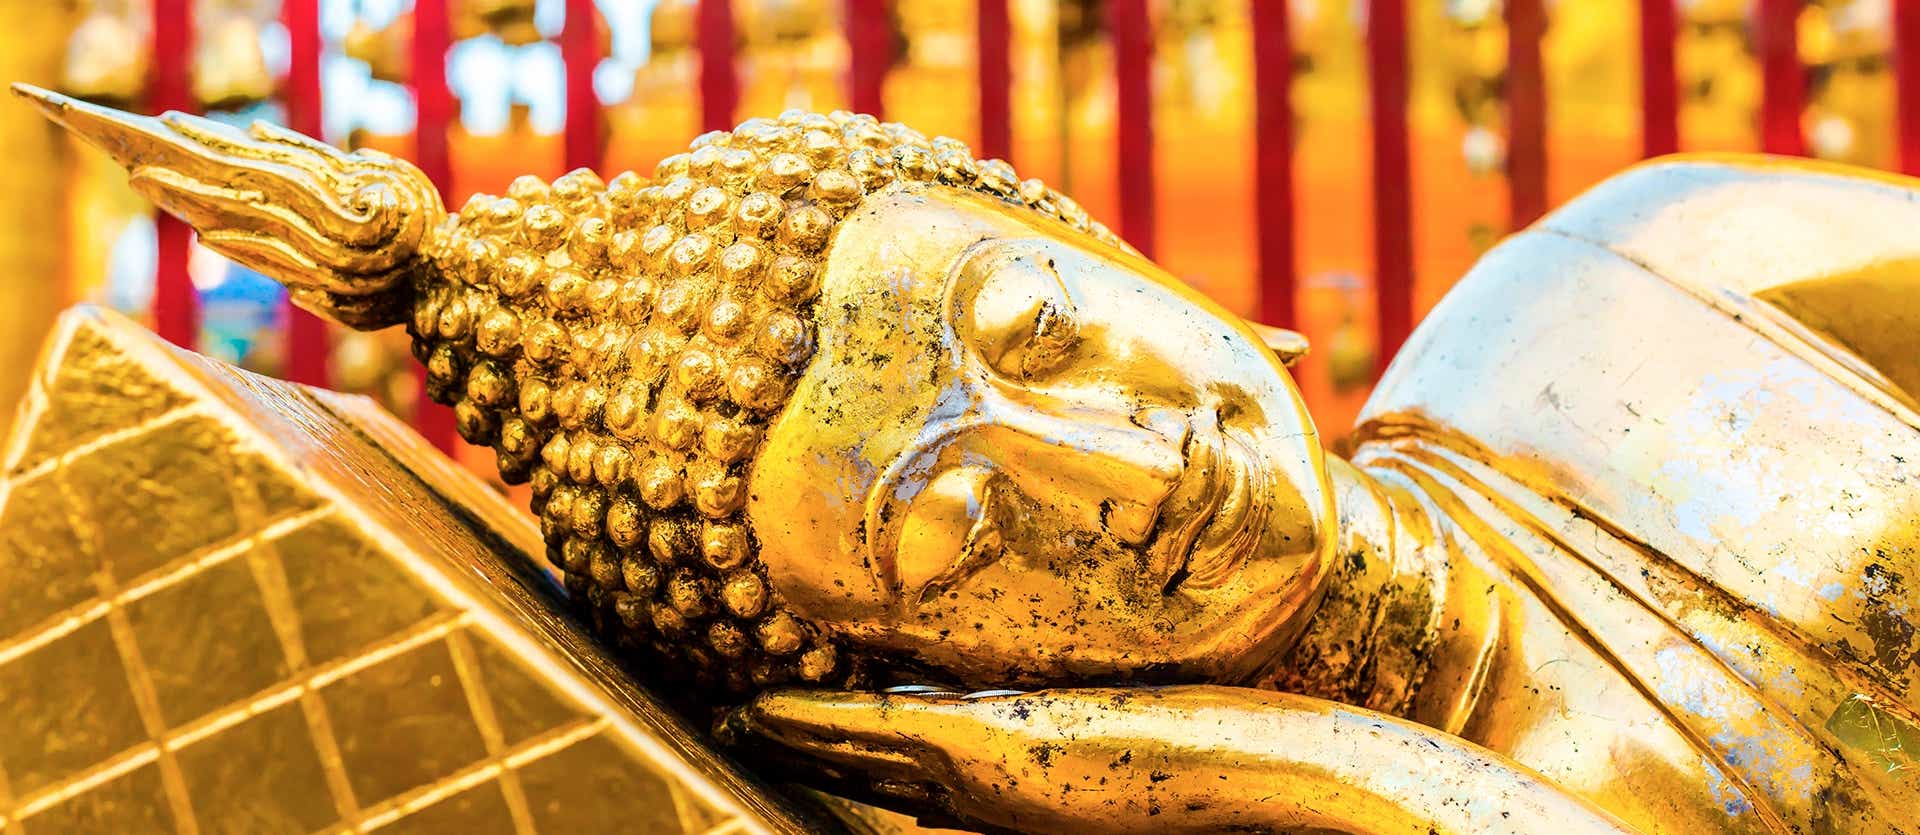 Golden Buddha <span class="iconos separador"></span> Doi Suthep <span class="iconos separador"></span> Chiang Mai